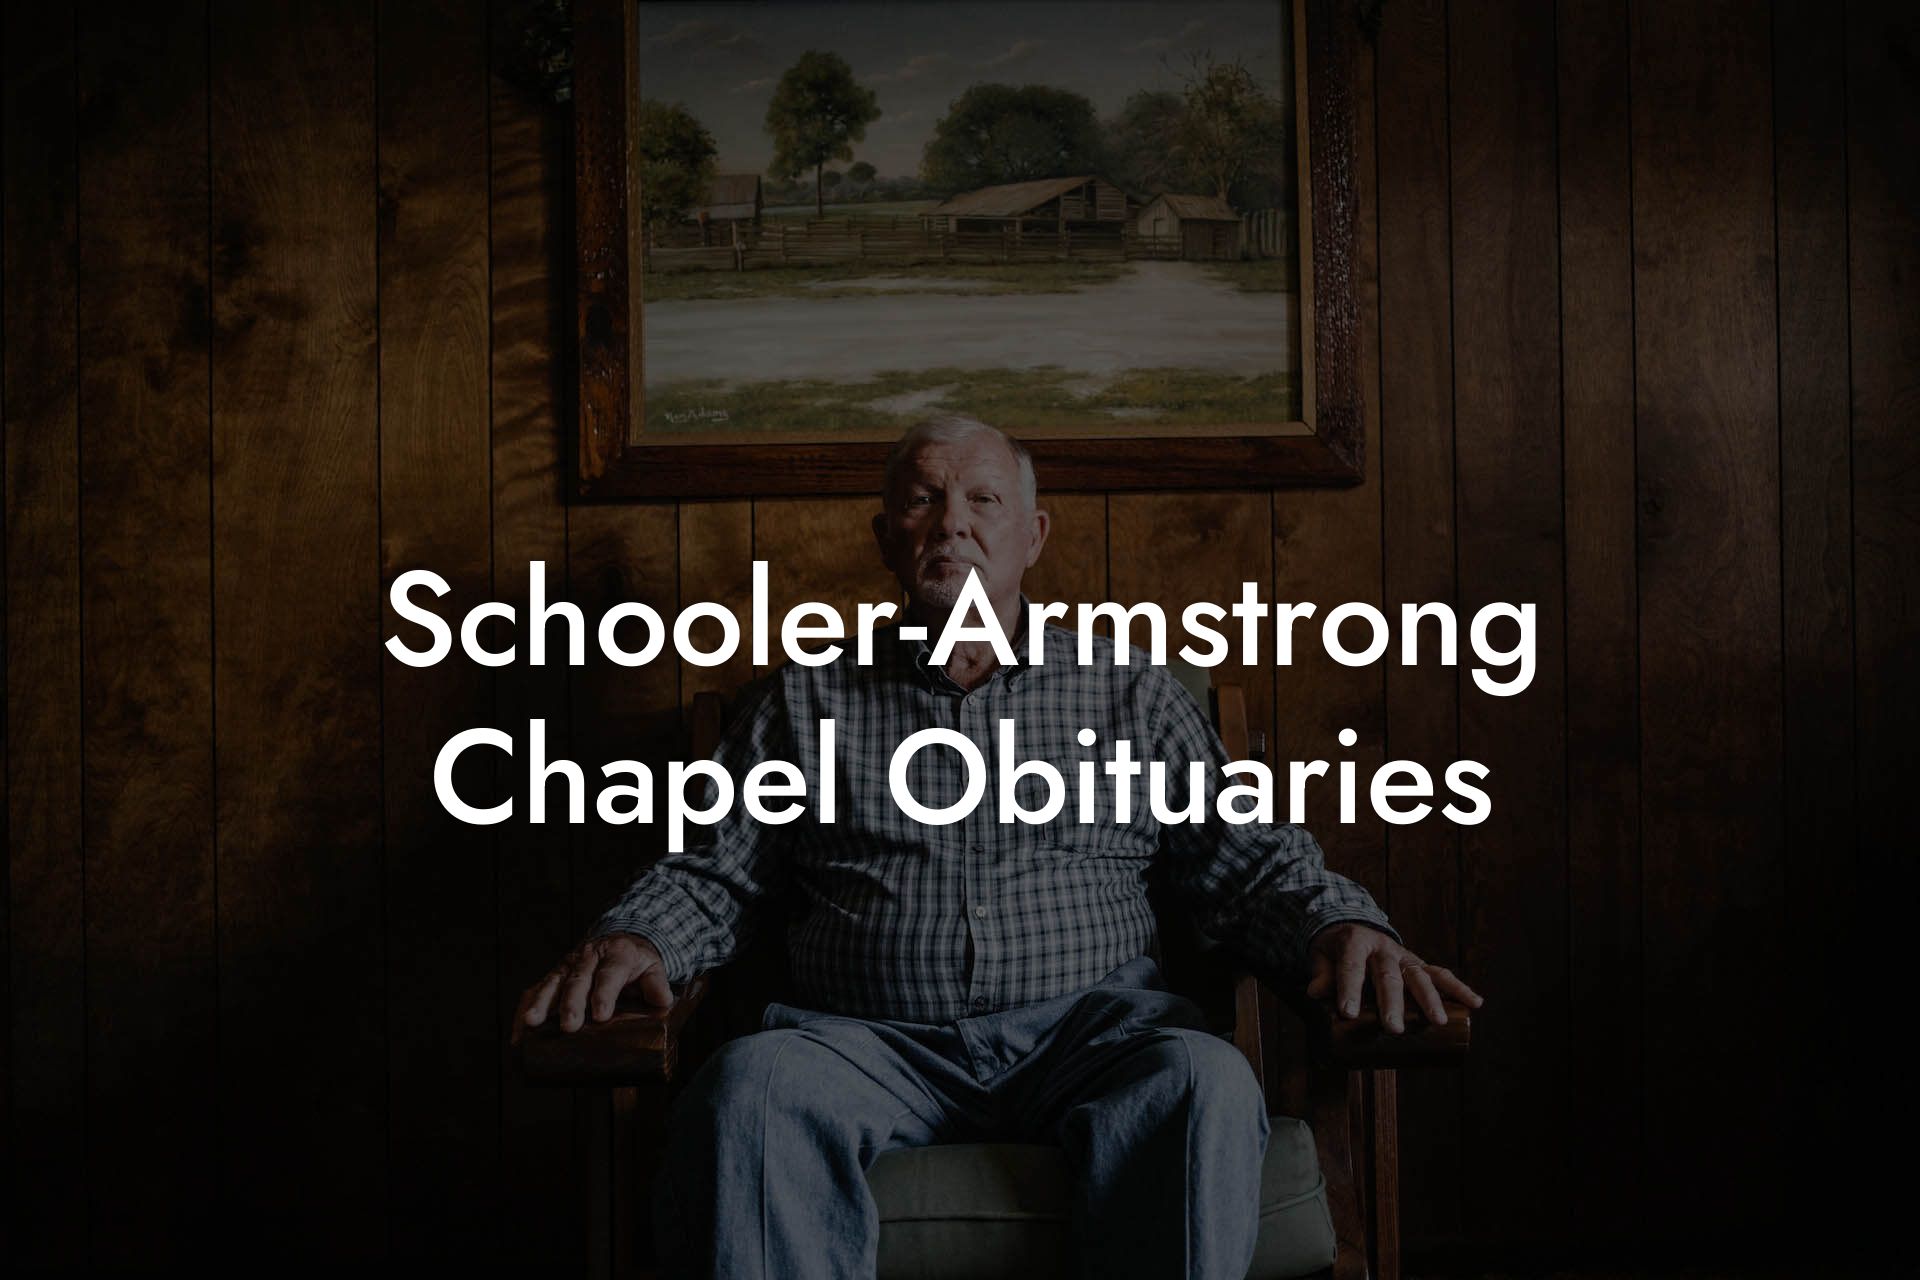 Schooler-Armstrong Chapel Obituaries